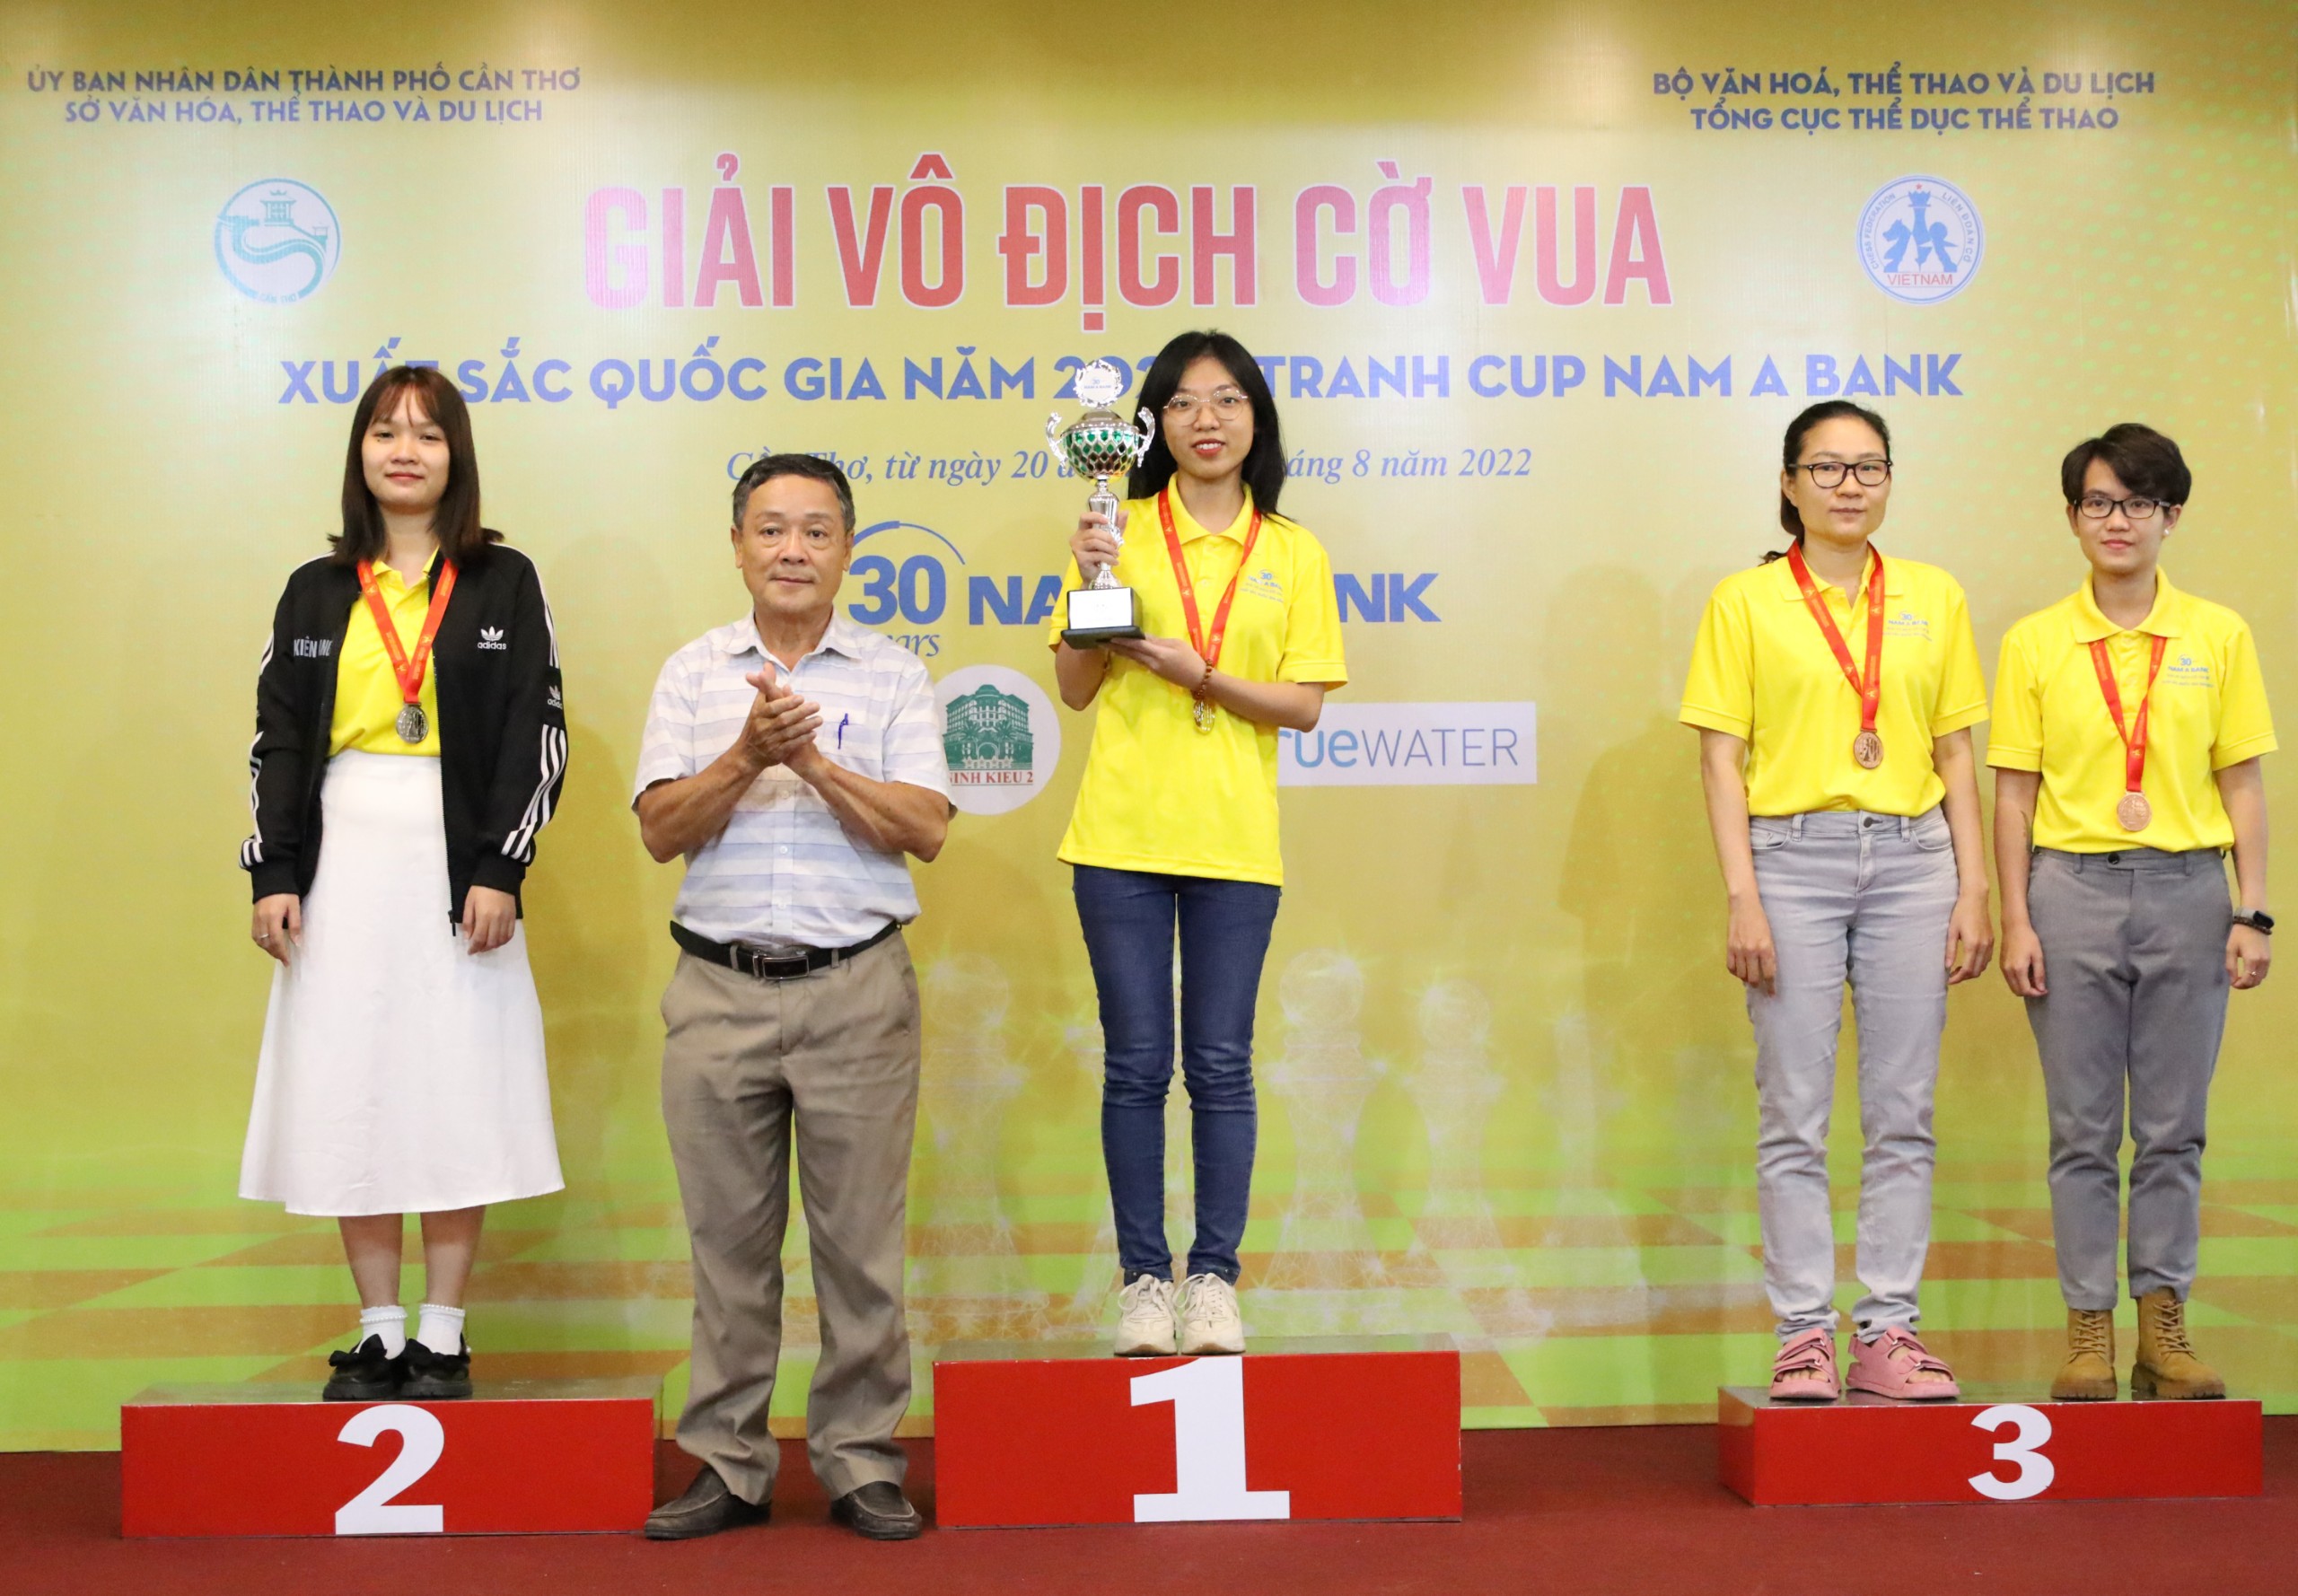 Ông Trần Duy Hùng - Trưởng phòng Quản lý TDTT, Sở Văn hóa, Thể thao và Du lịch TP. Cần Thơ trao huy chương và cúp cho các vận động viên.